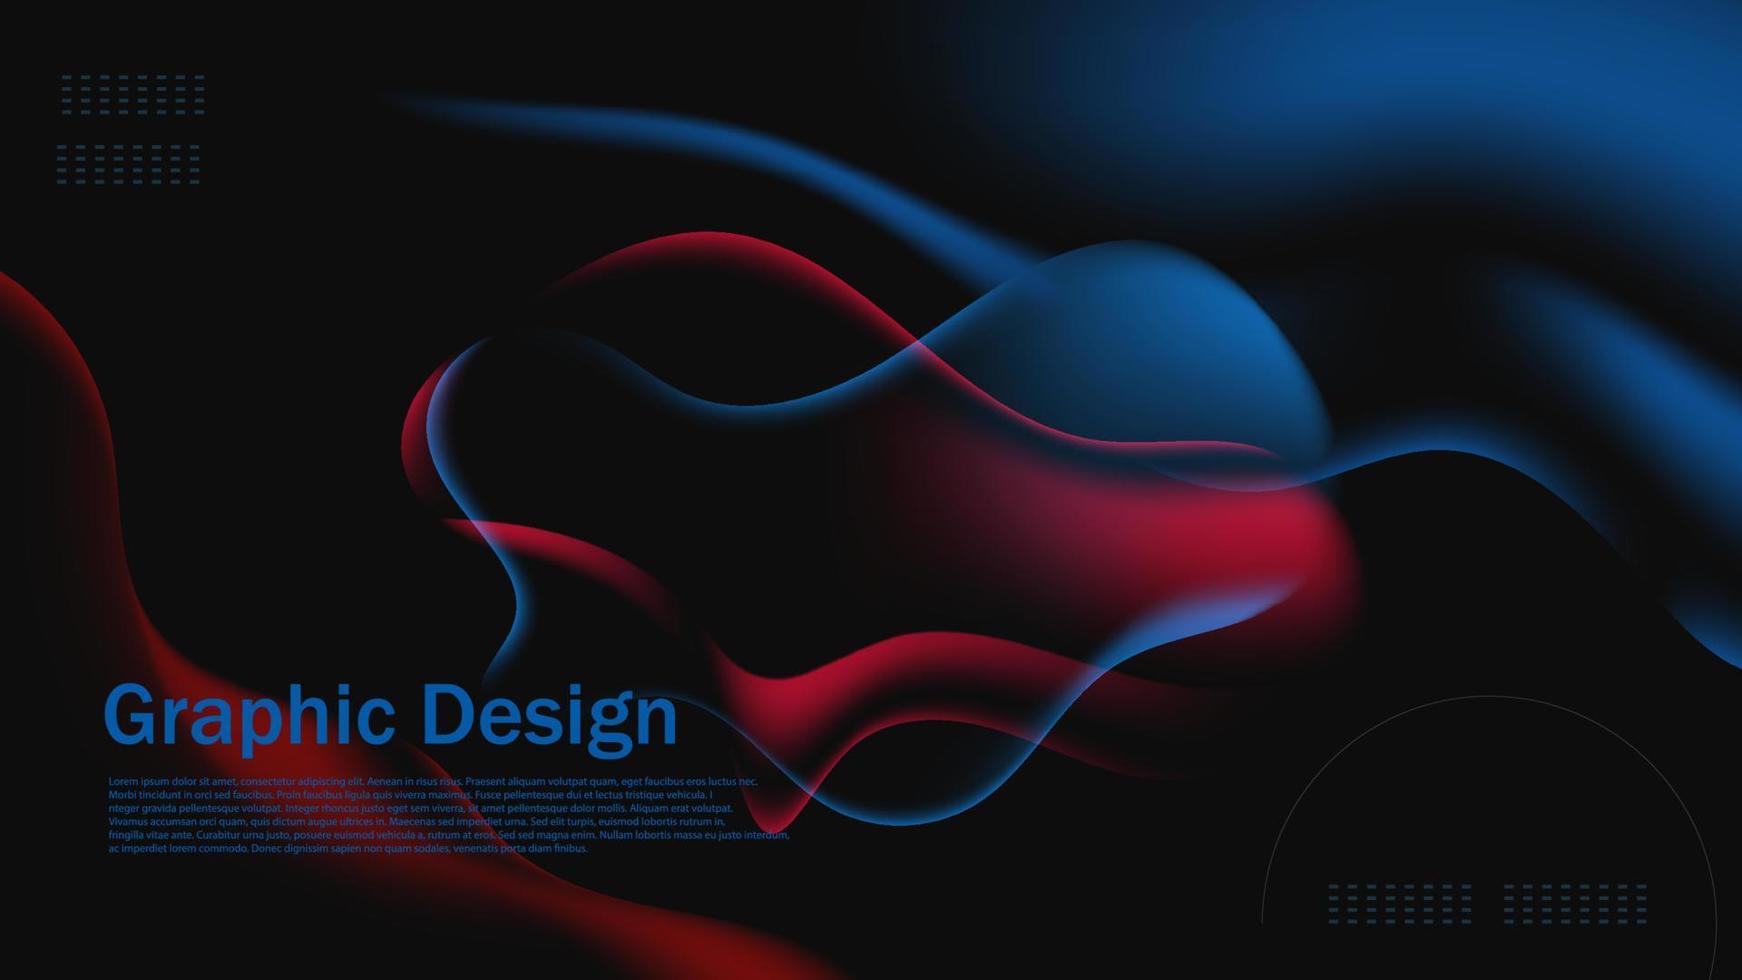 3D moderner dynamischer roter und blauer transparenter Effekt, abstrakte futuristische Grafik vektor